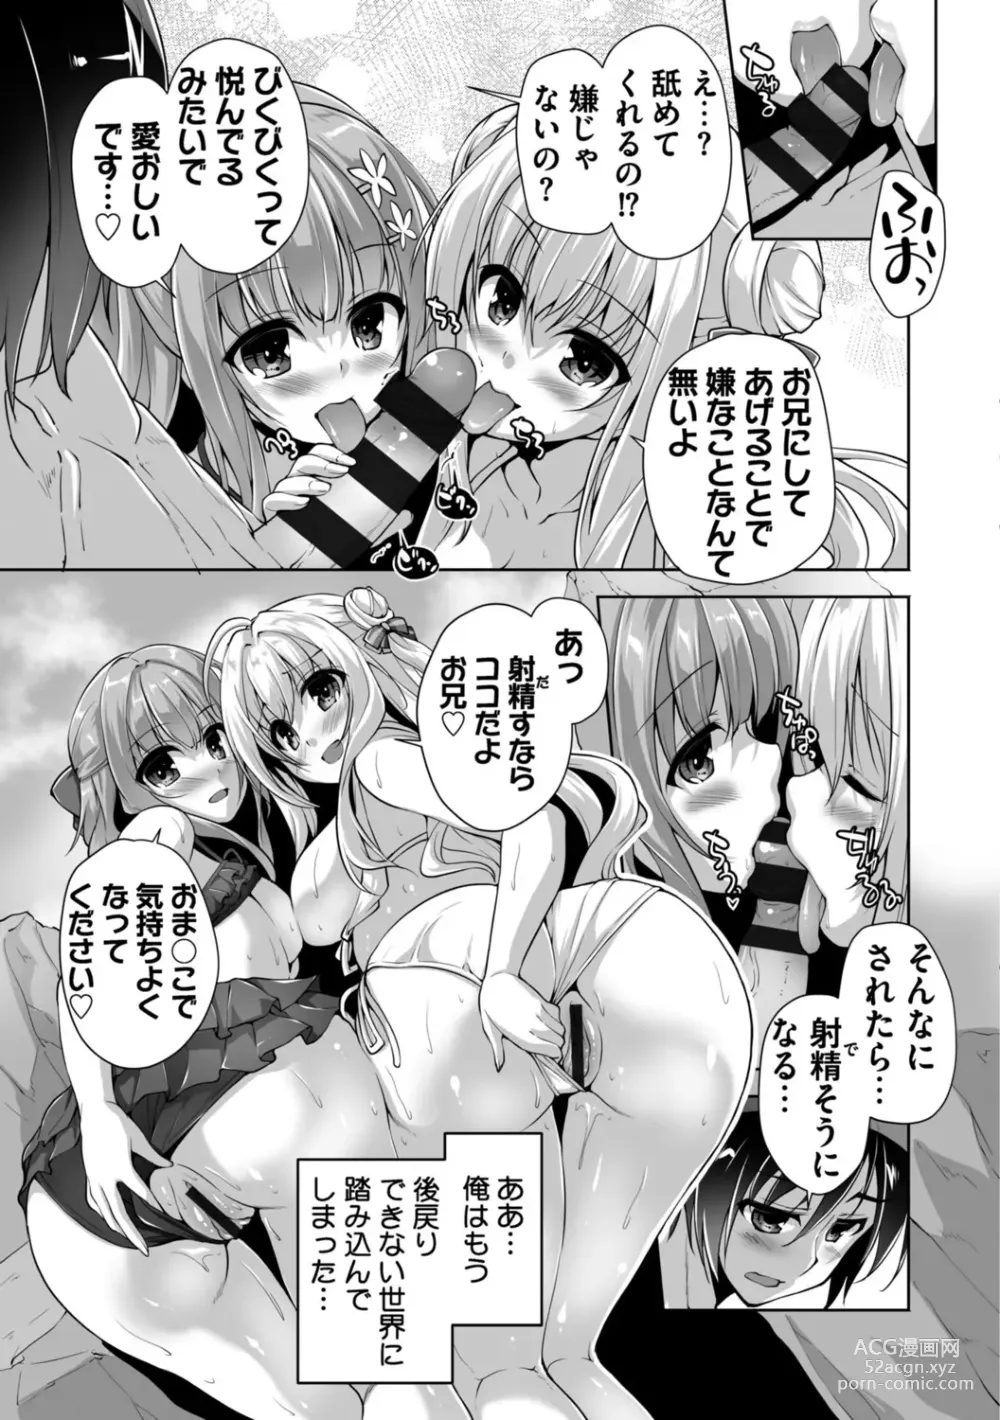 Page 199 of manga Hamidashi Creative Adult Edition